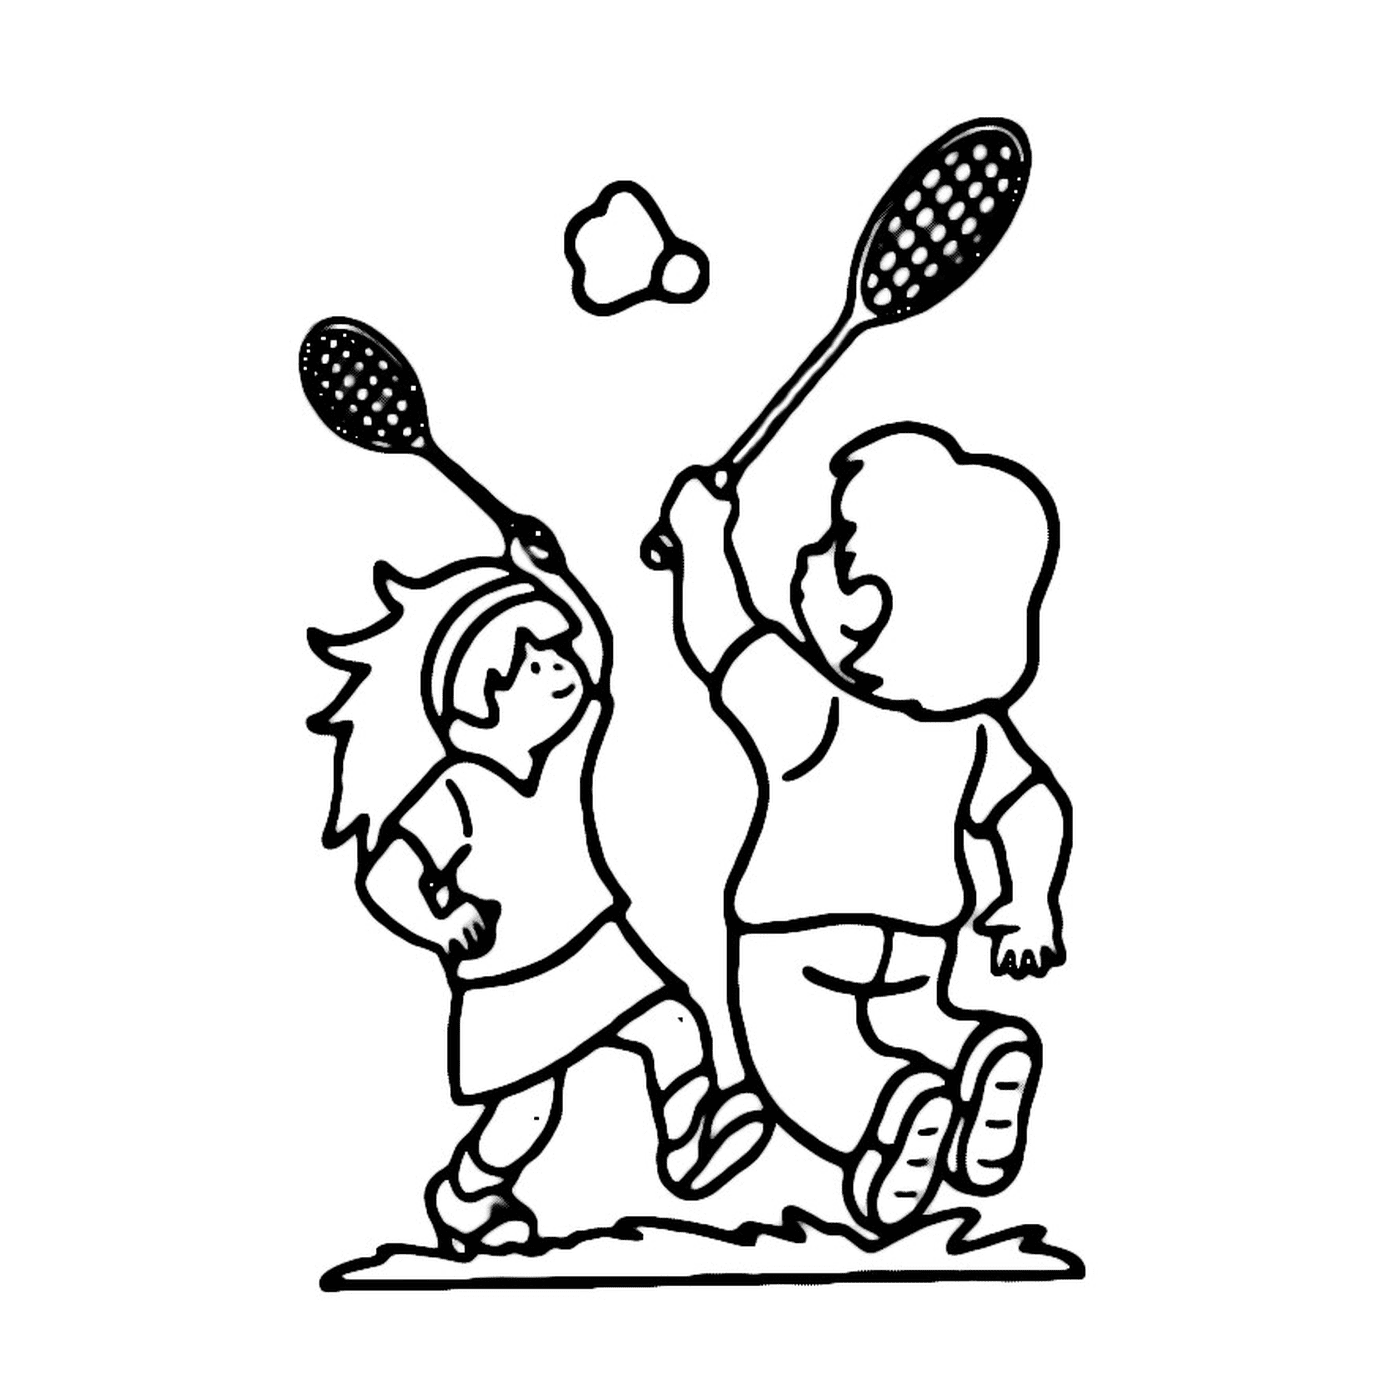  Dos niños juegan bádminton en un campo 